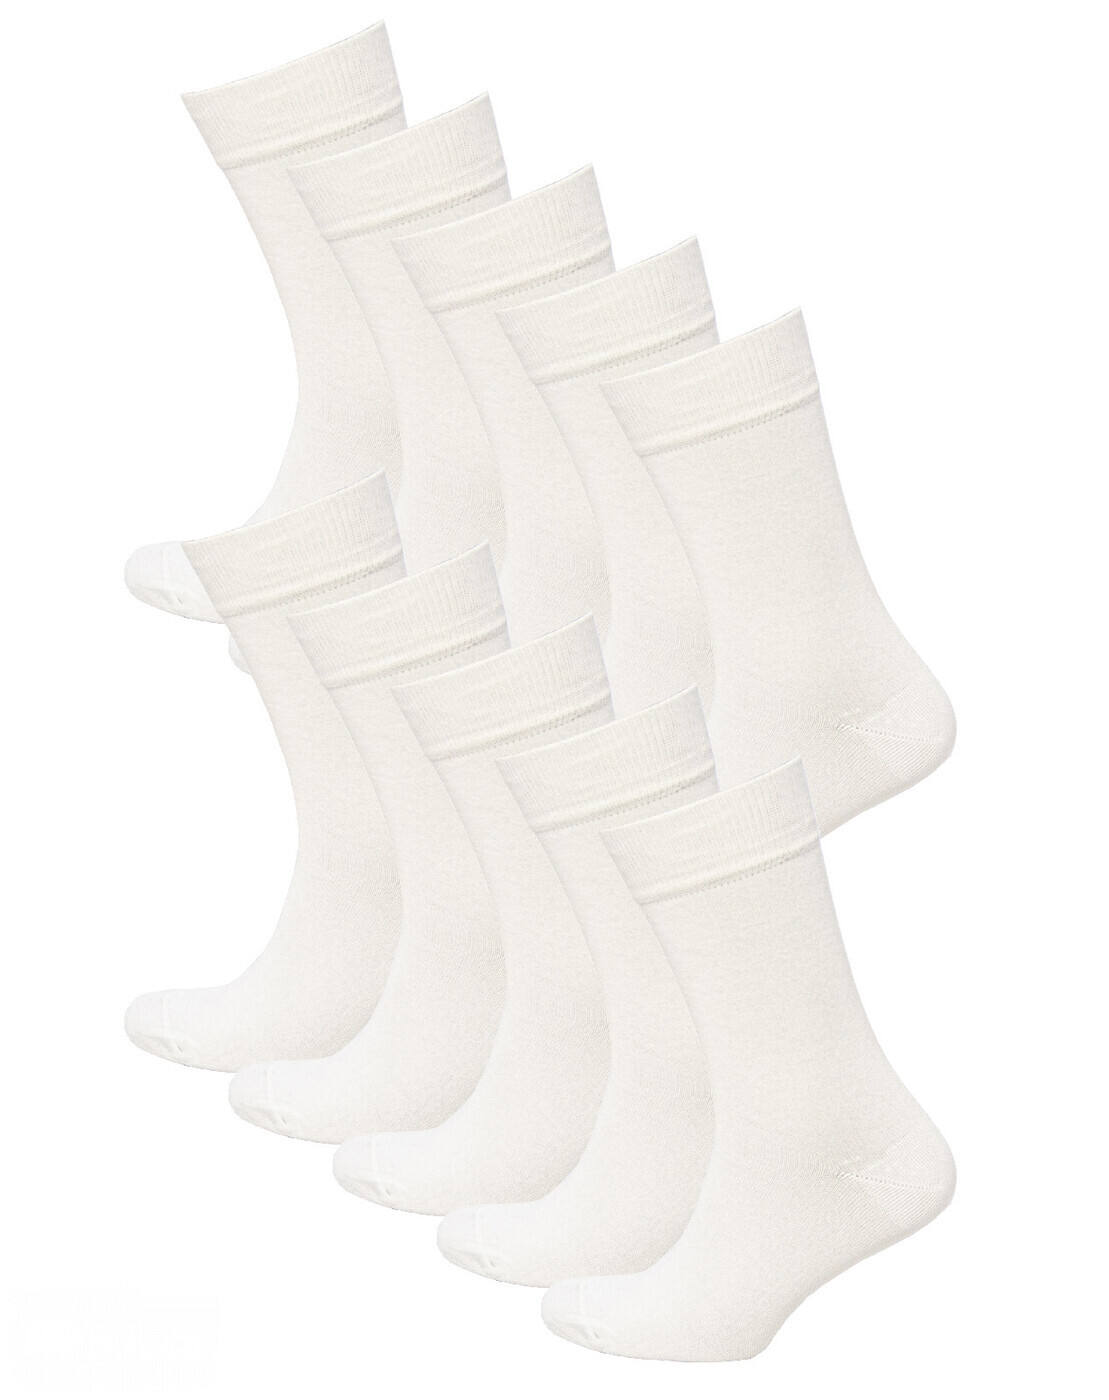 Комплект носков мужских Status Классические из хлопка 10 пар белых 25